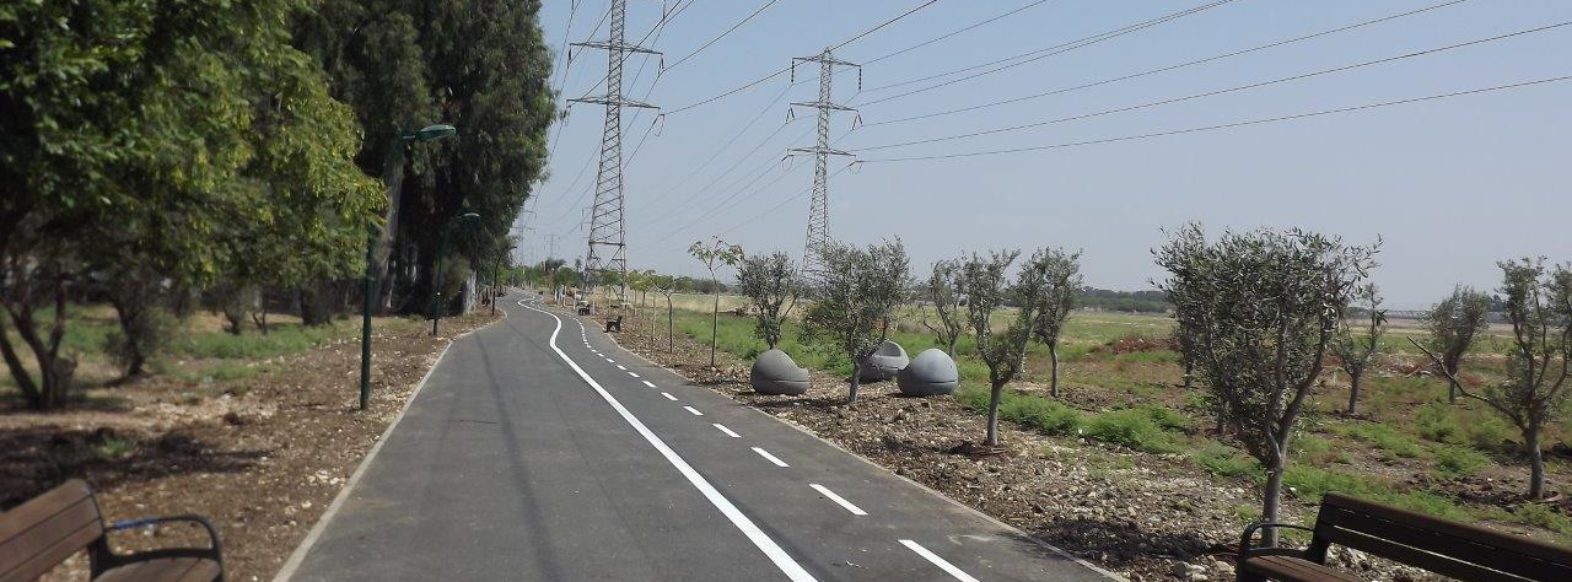 נגנזה התוכנית להקמת כביש בין עירוני לאורך נחל גדורה